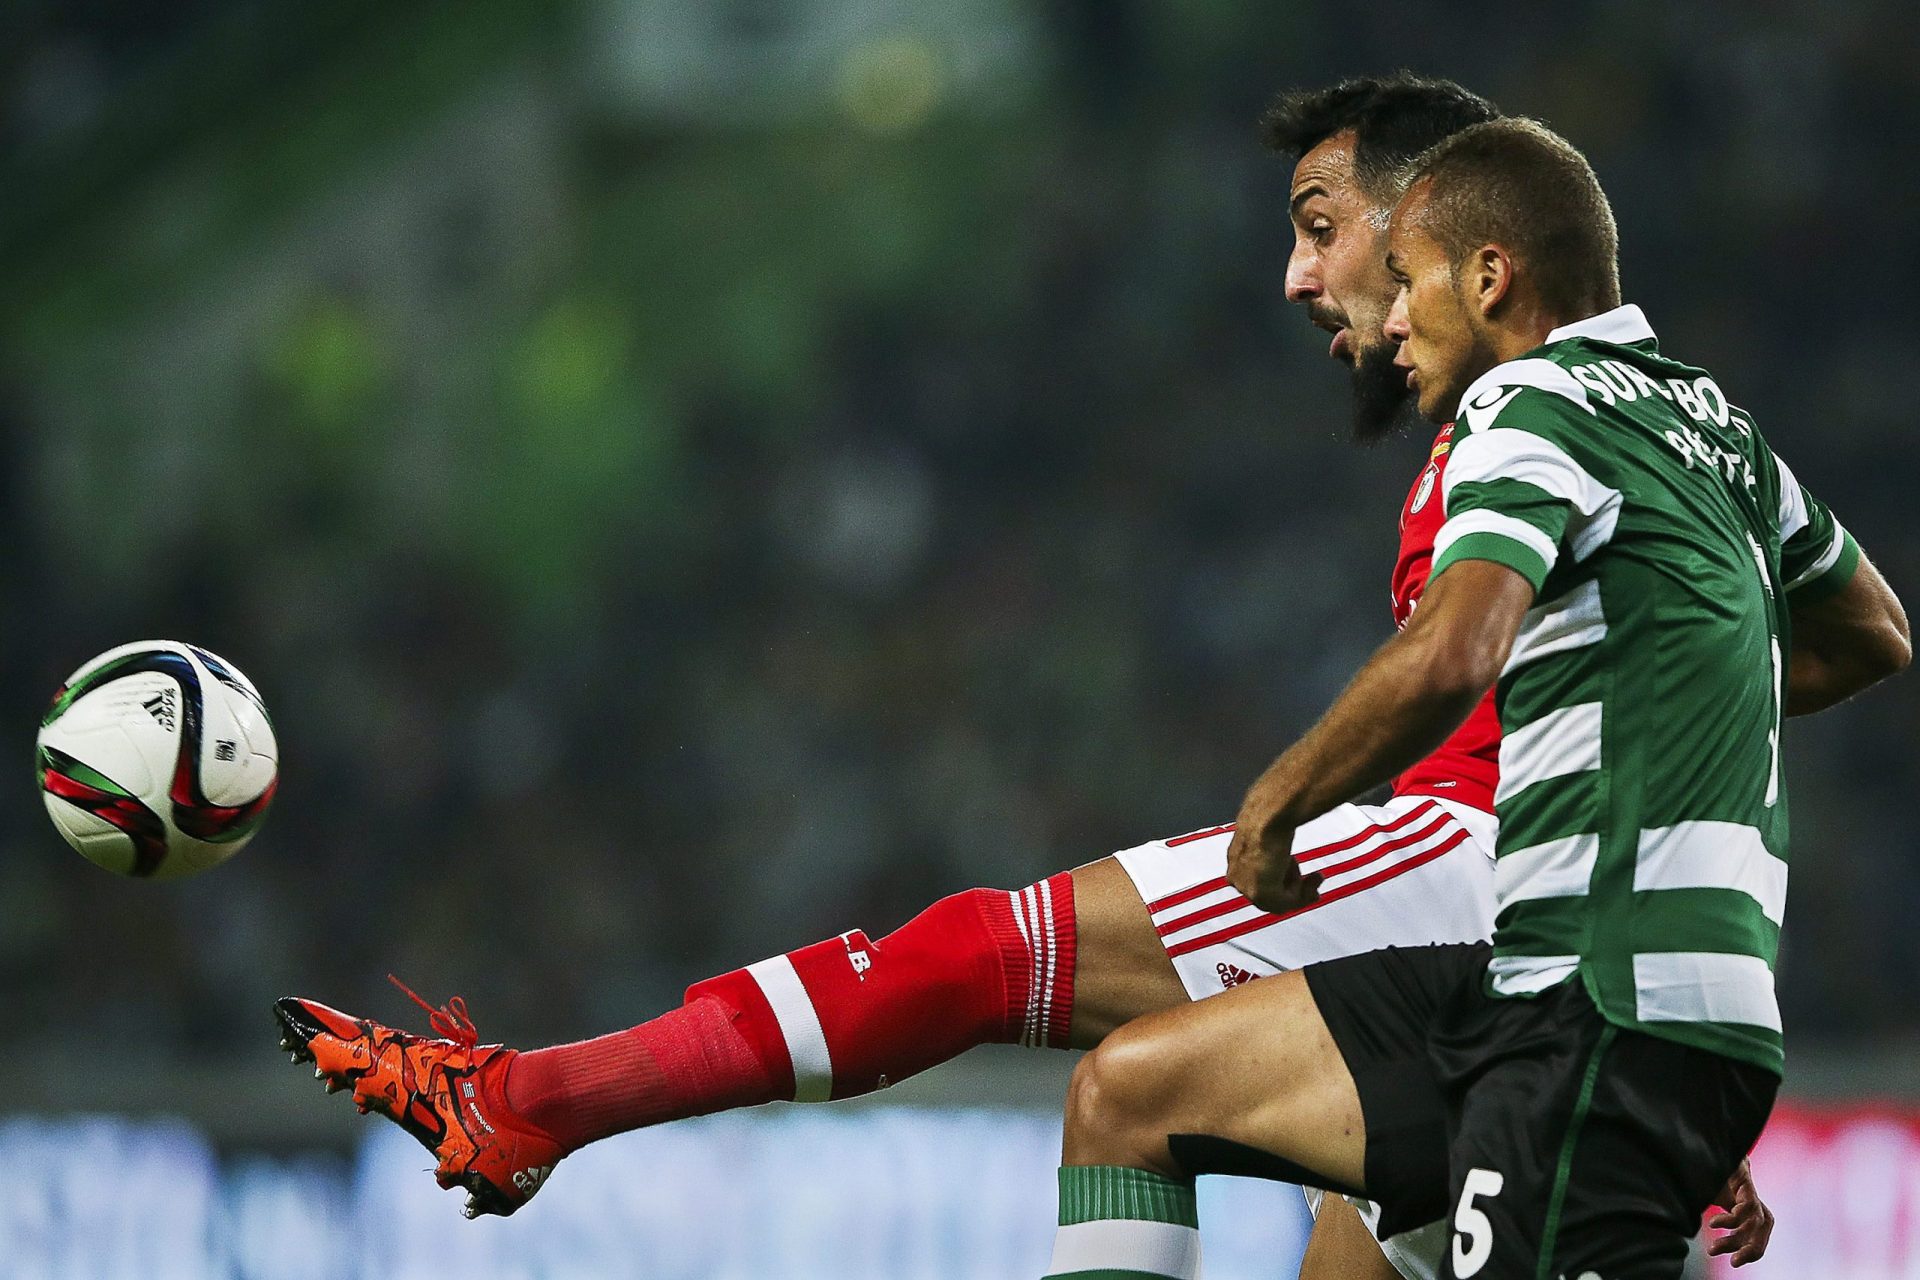 14 adeptos detidos no rescaldo do Sporting-Benfica